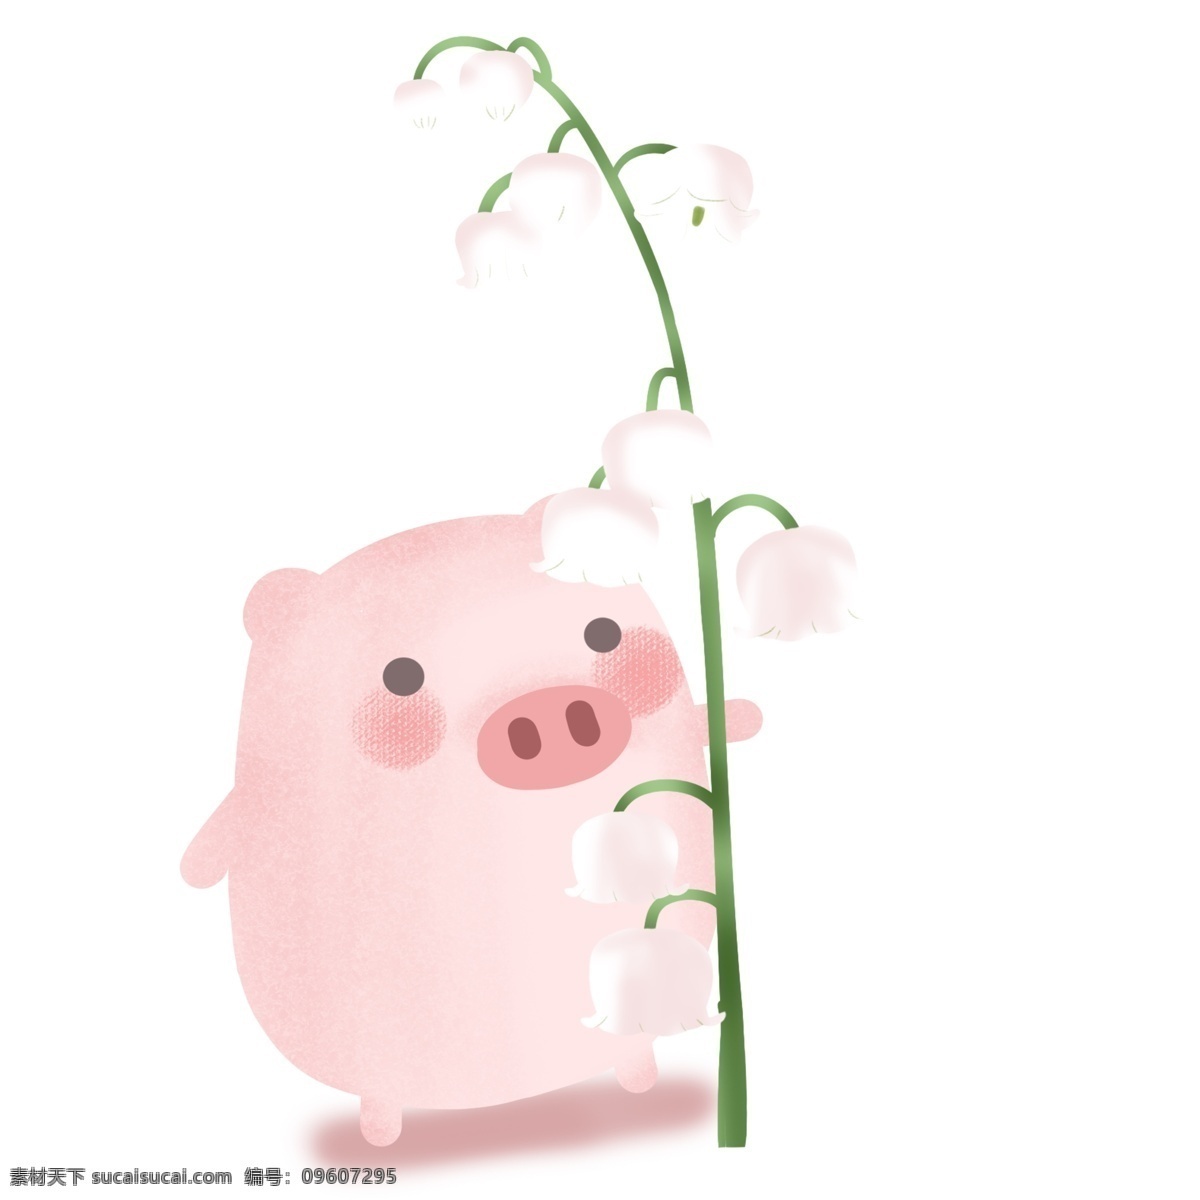 花 下面 可爱 小 猪 卡通 图 唯美 清新 卡通插画风格 卡通手绘风格 白色 小花 下 面的 粉色 猪年快乐